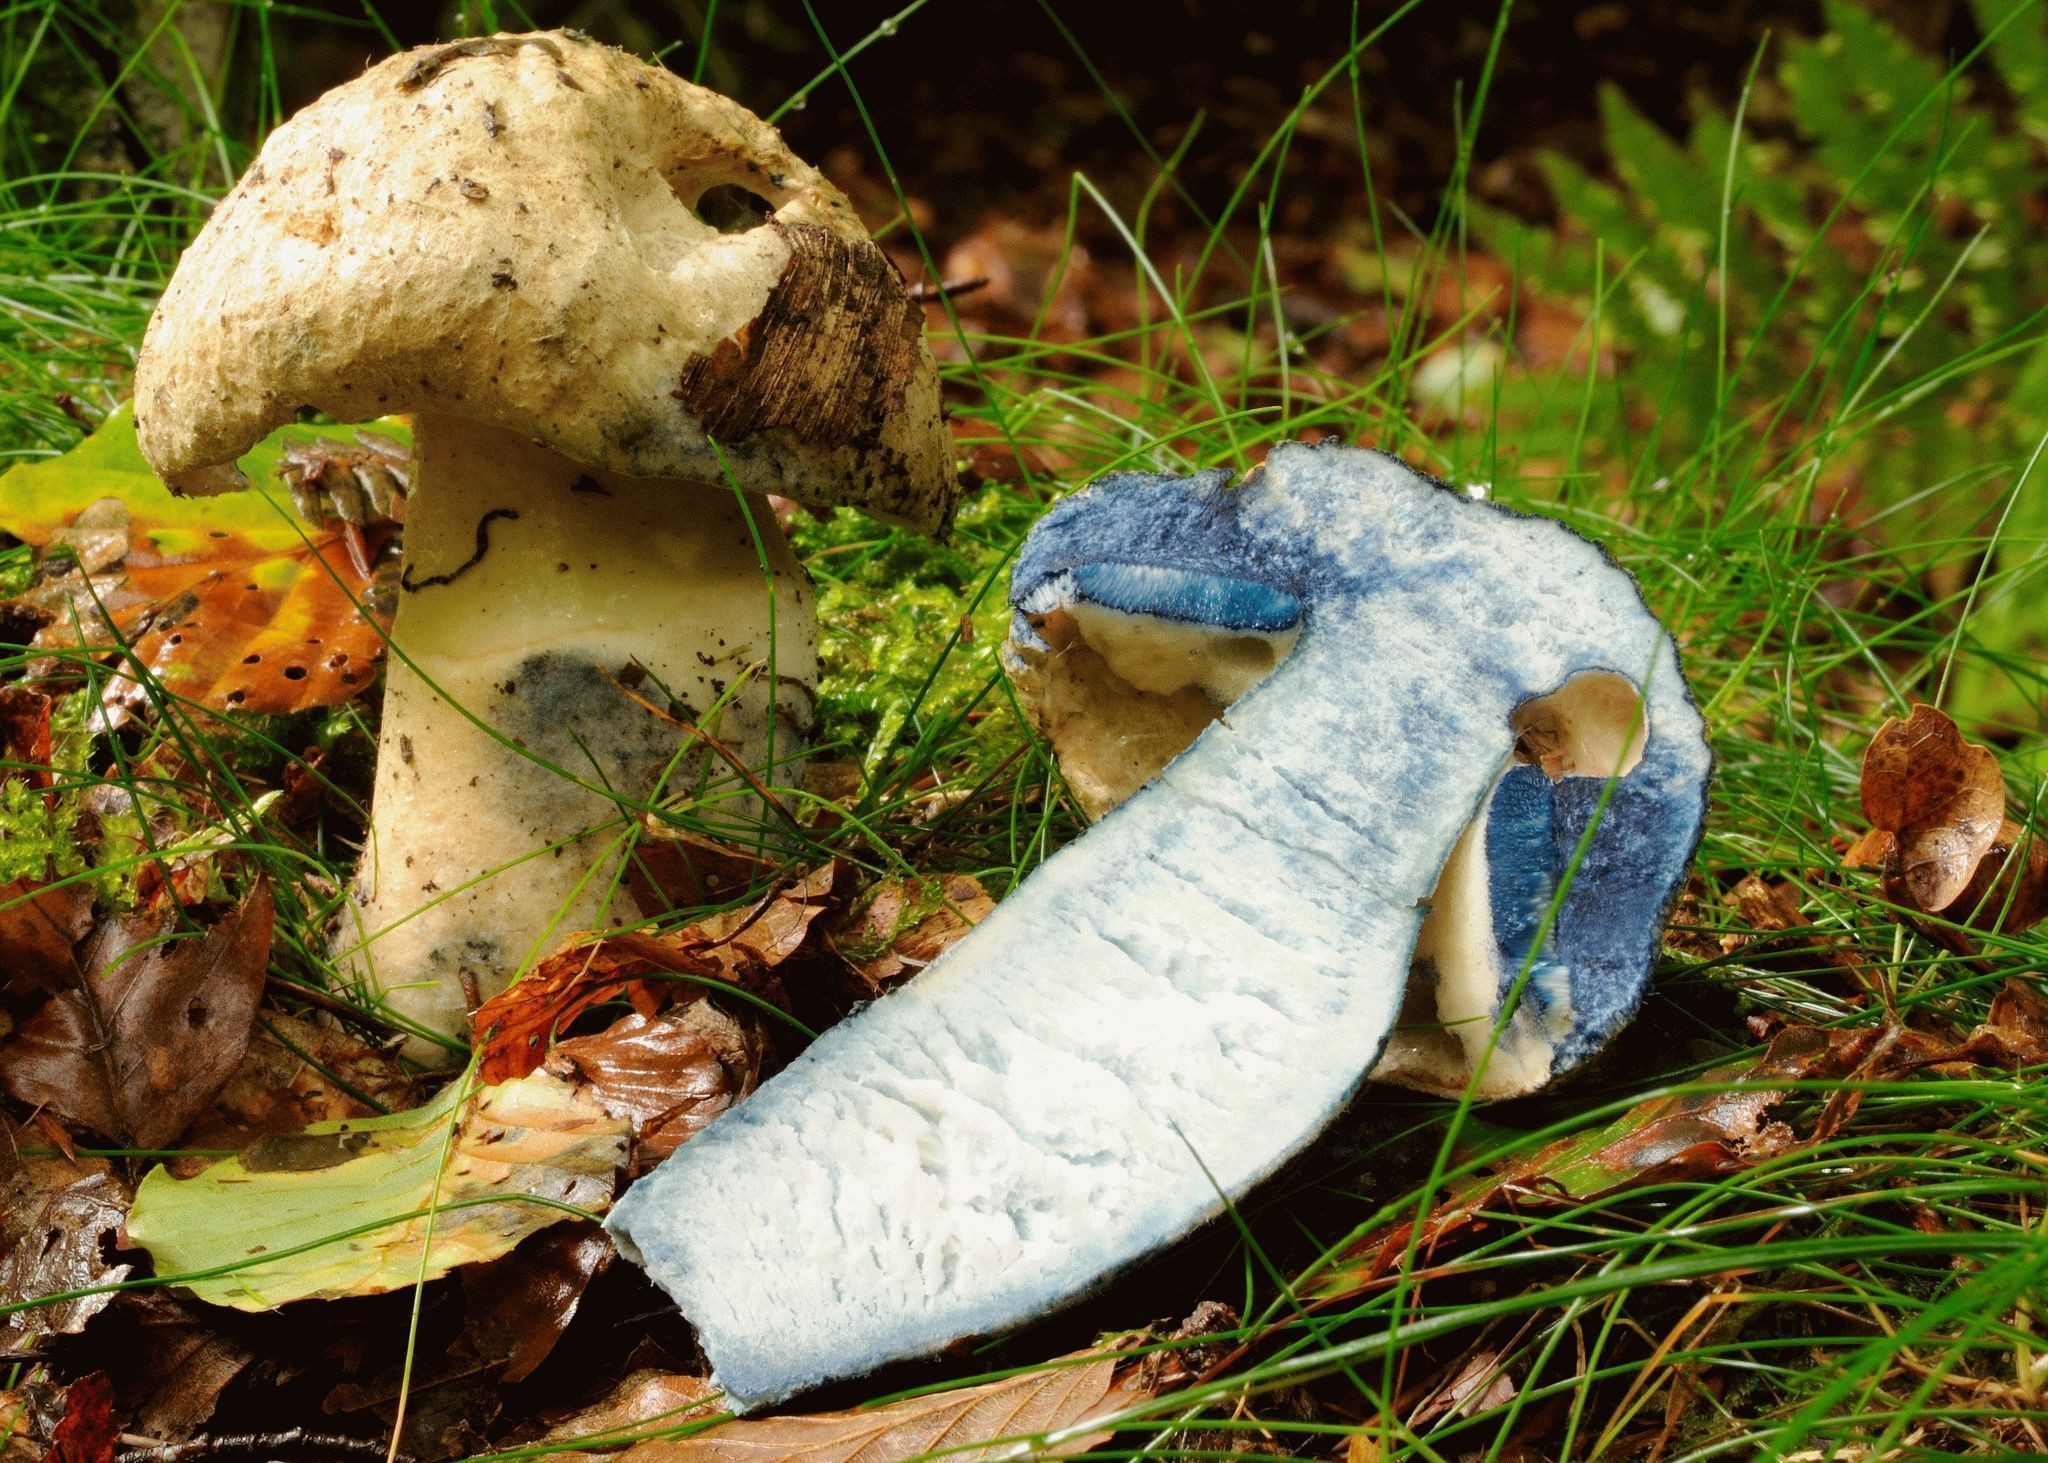 Синяк - описание, где растет, ядовитость гриба